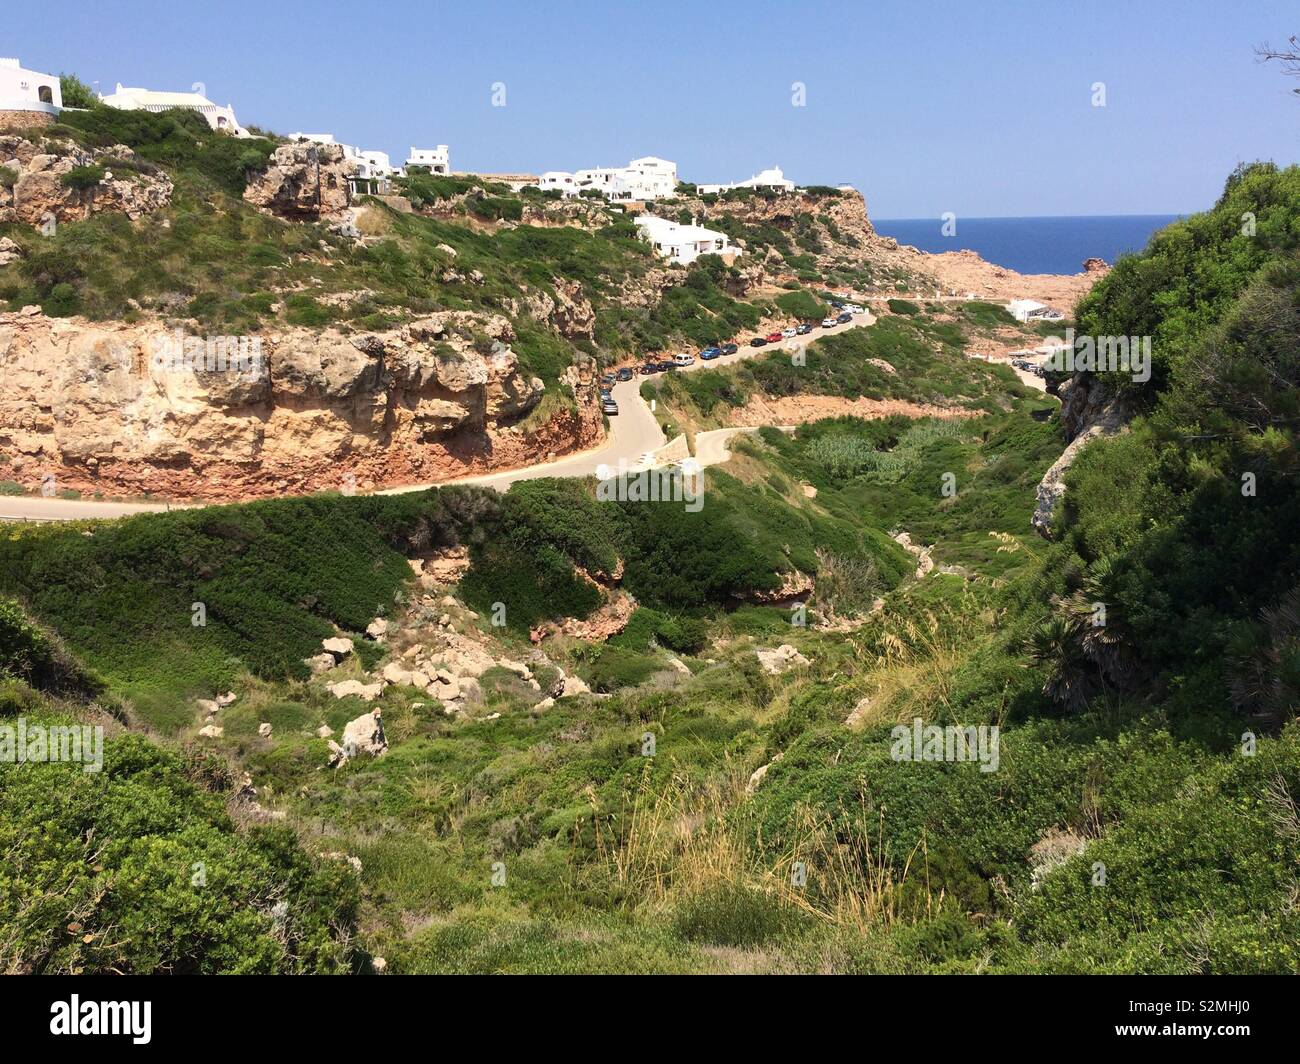 Giornata di sole a Cala Morell, Menorca, Baleares, Spagna Foto Stock